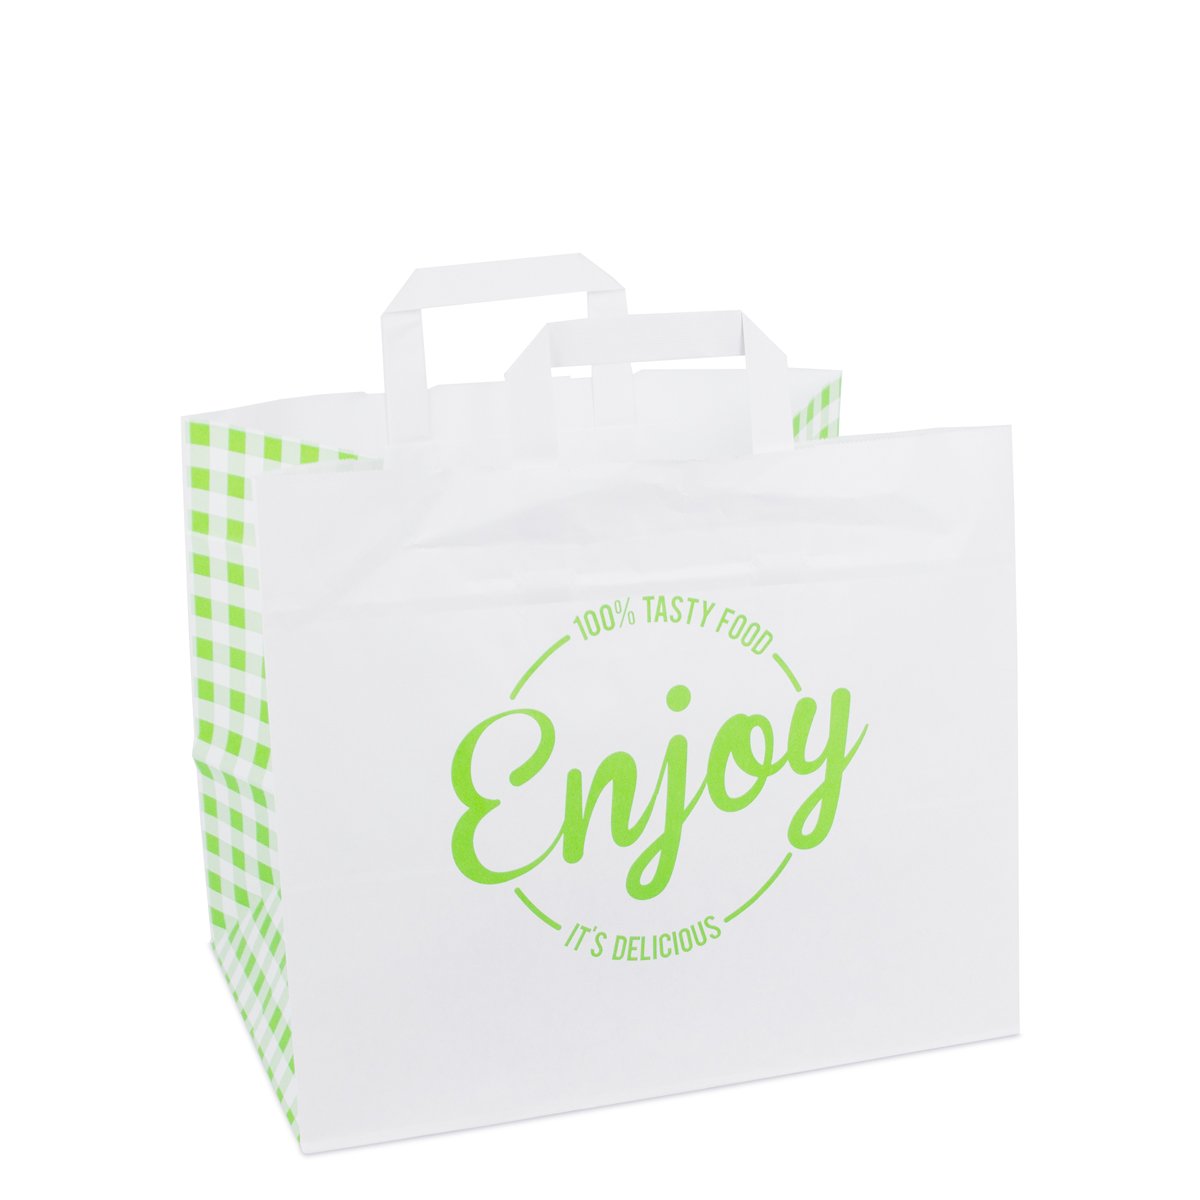 Papieren tassen met platte lussen - take away - Enjoy groen